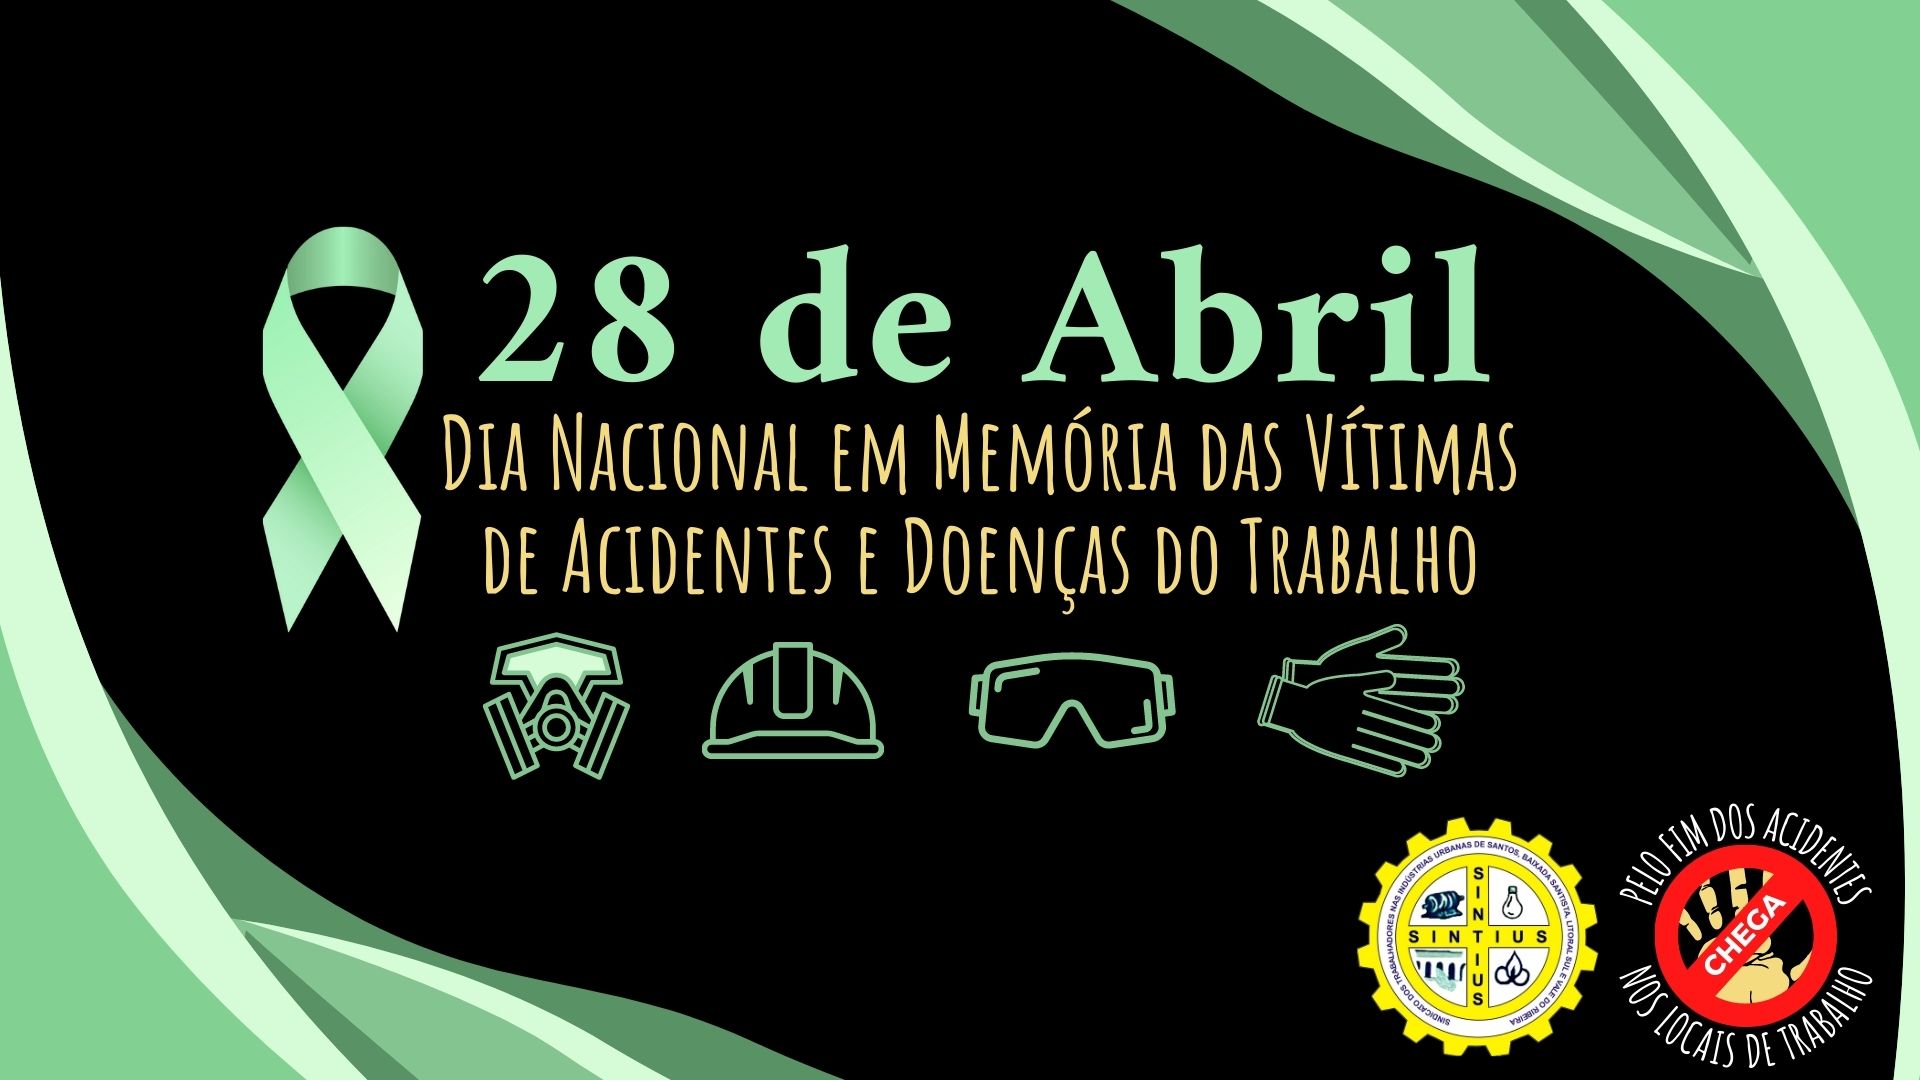 29 03 22 Dia Nacional em Memória das Vítimas de Acidentes